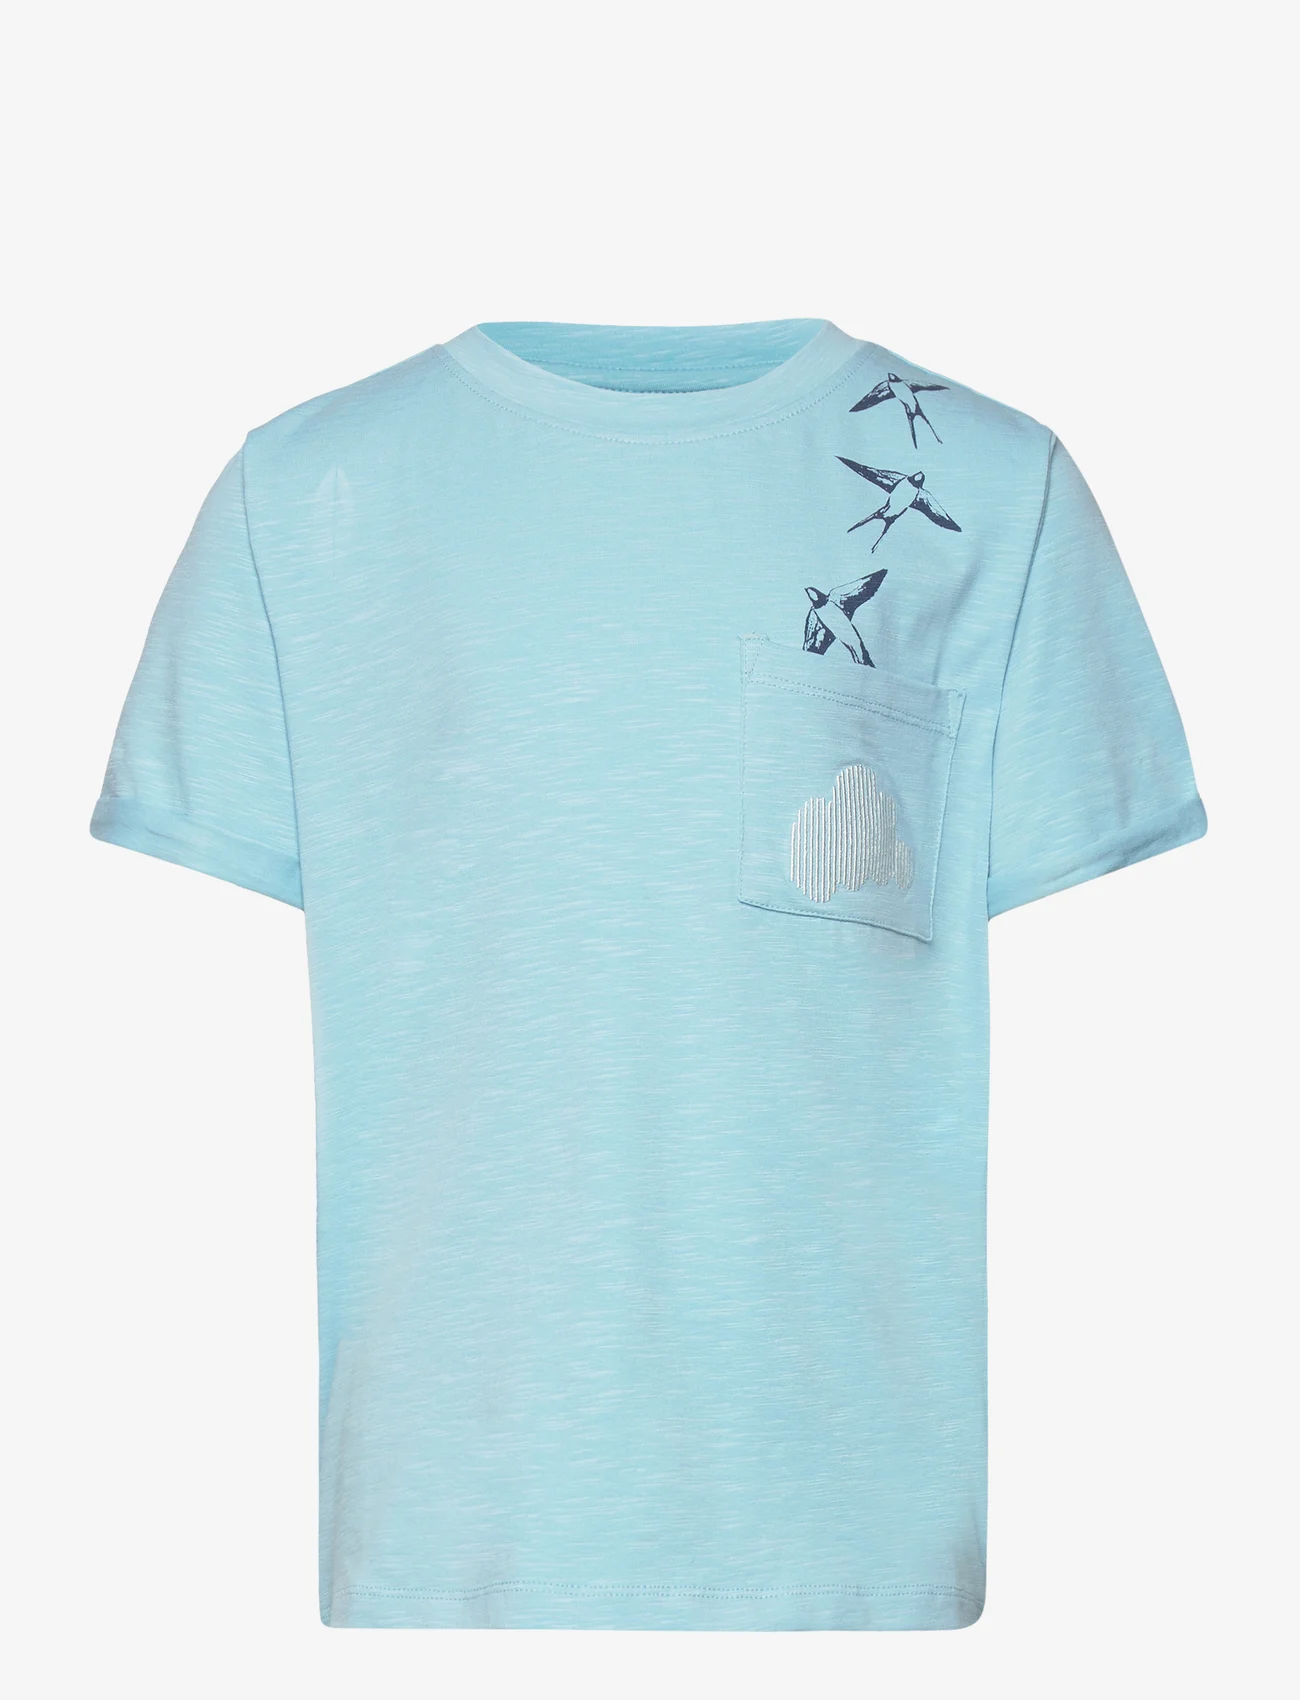 Soft Gallery - SGJaden Cloud ss tee - short-sleeved t-shirts - sky blue - 0